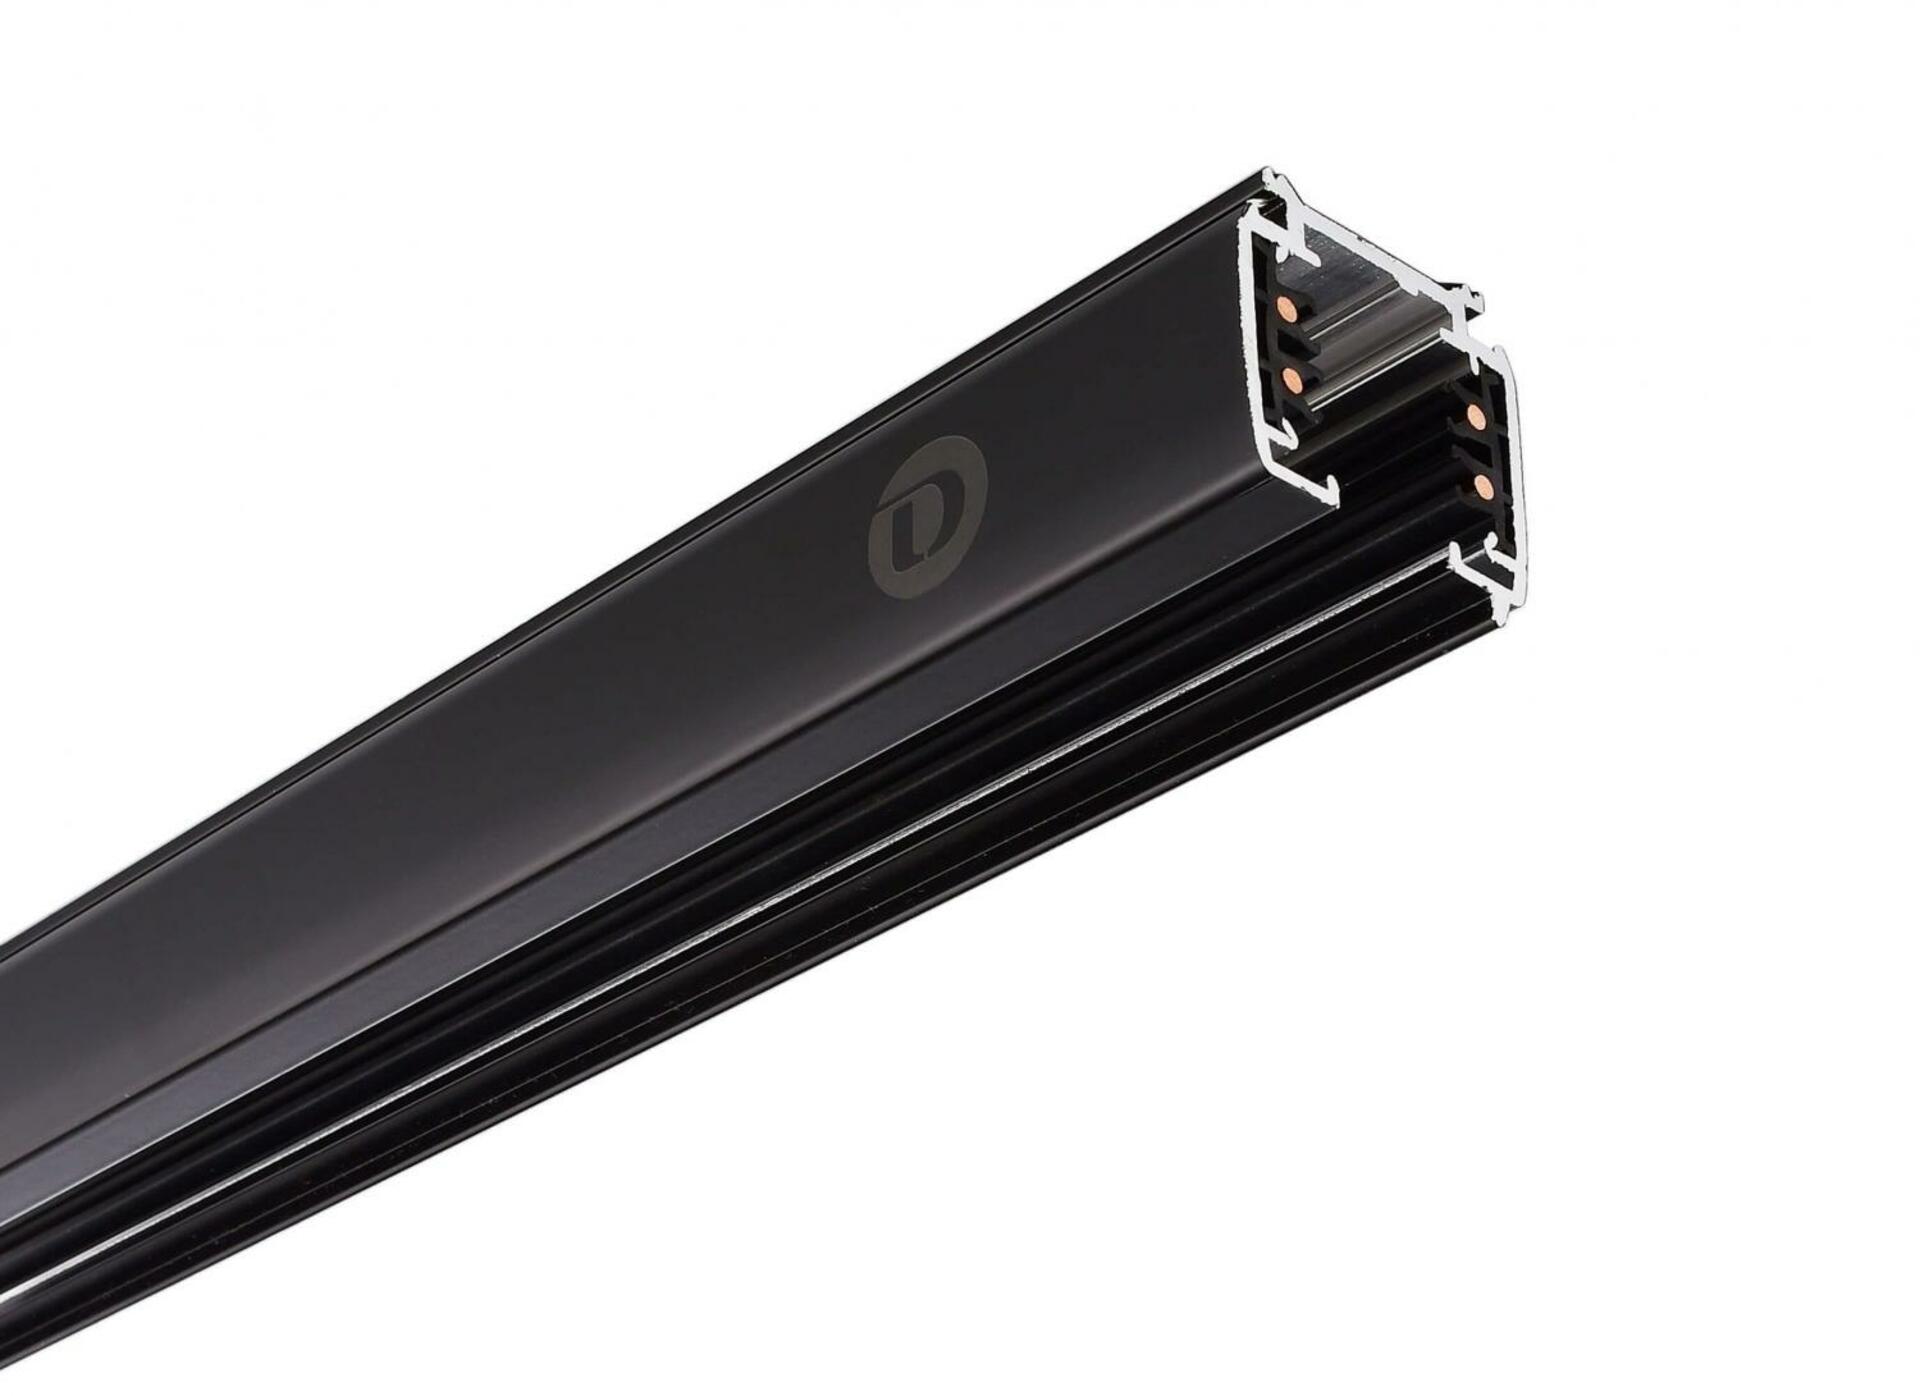 Light Impressions Deko-Light kolejnicový systém 3-fázový 230V D Line vestavná lišta 2m 220-240V AC/50-60Hz černá RAL 9011 2000  710005